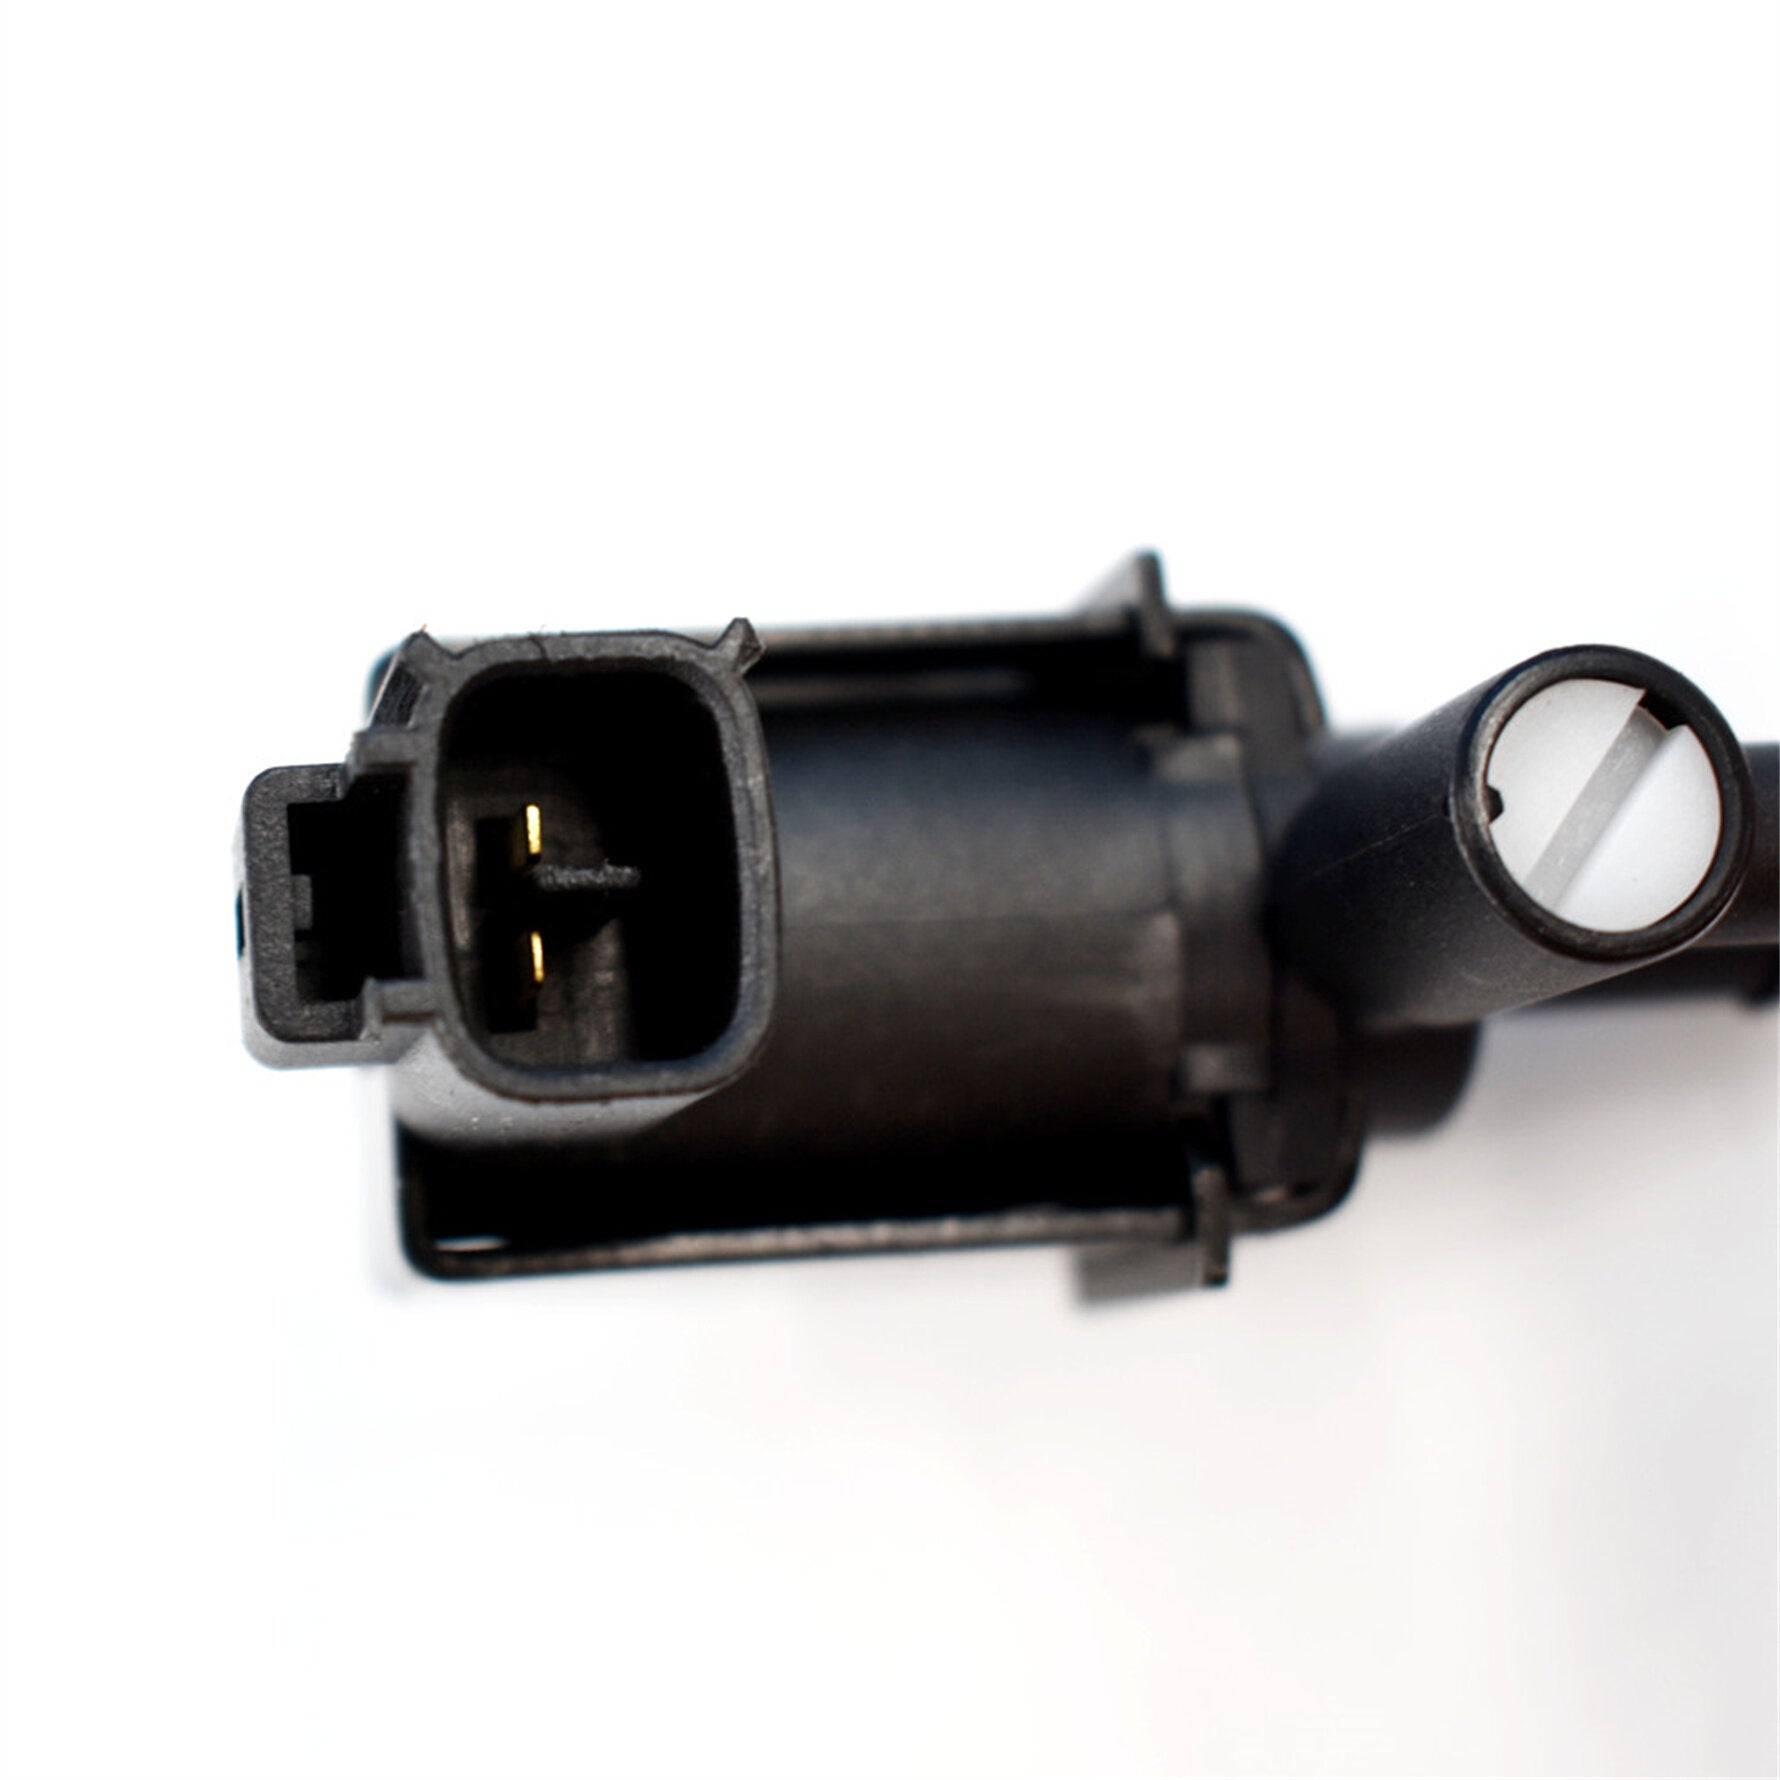 munirater 1 Pc Vacuum Solenoid Switch Valve VSV Replacement for Toyota Celica Lexus, Camry 192000-3042 192000-3130